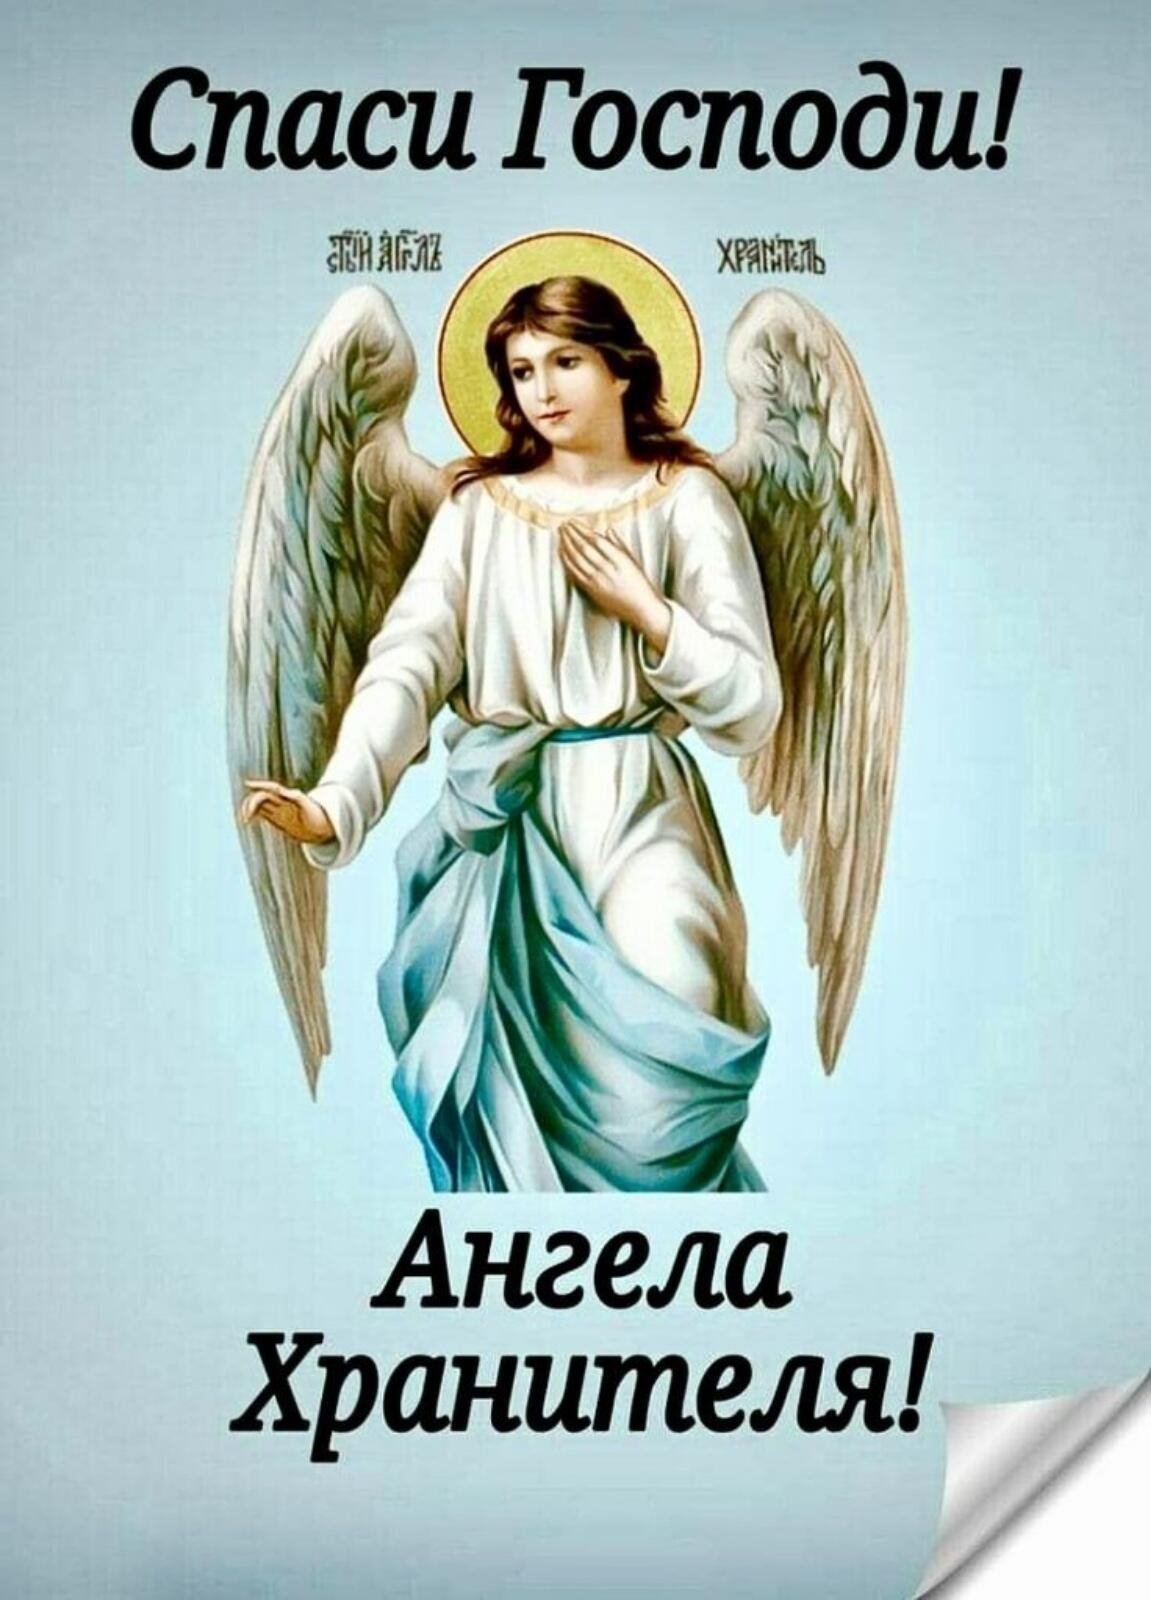 Помощь ангелу хранителю и святым за помощь